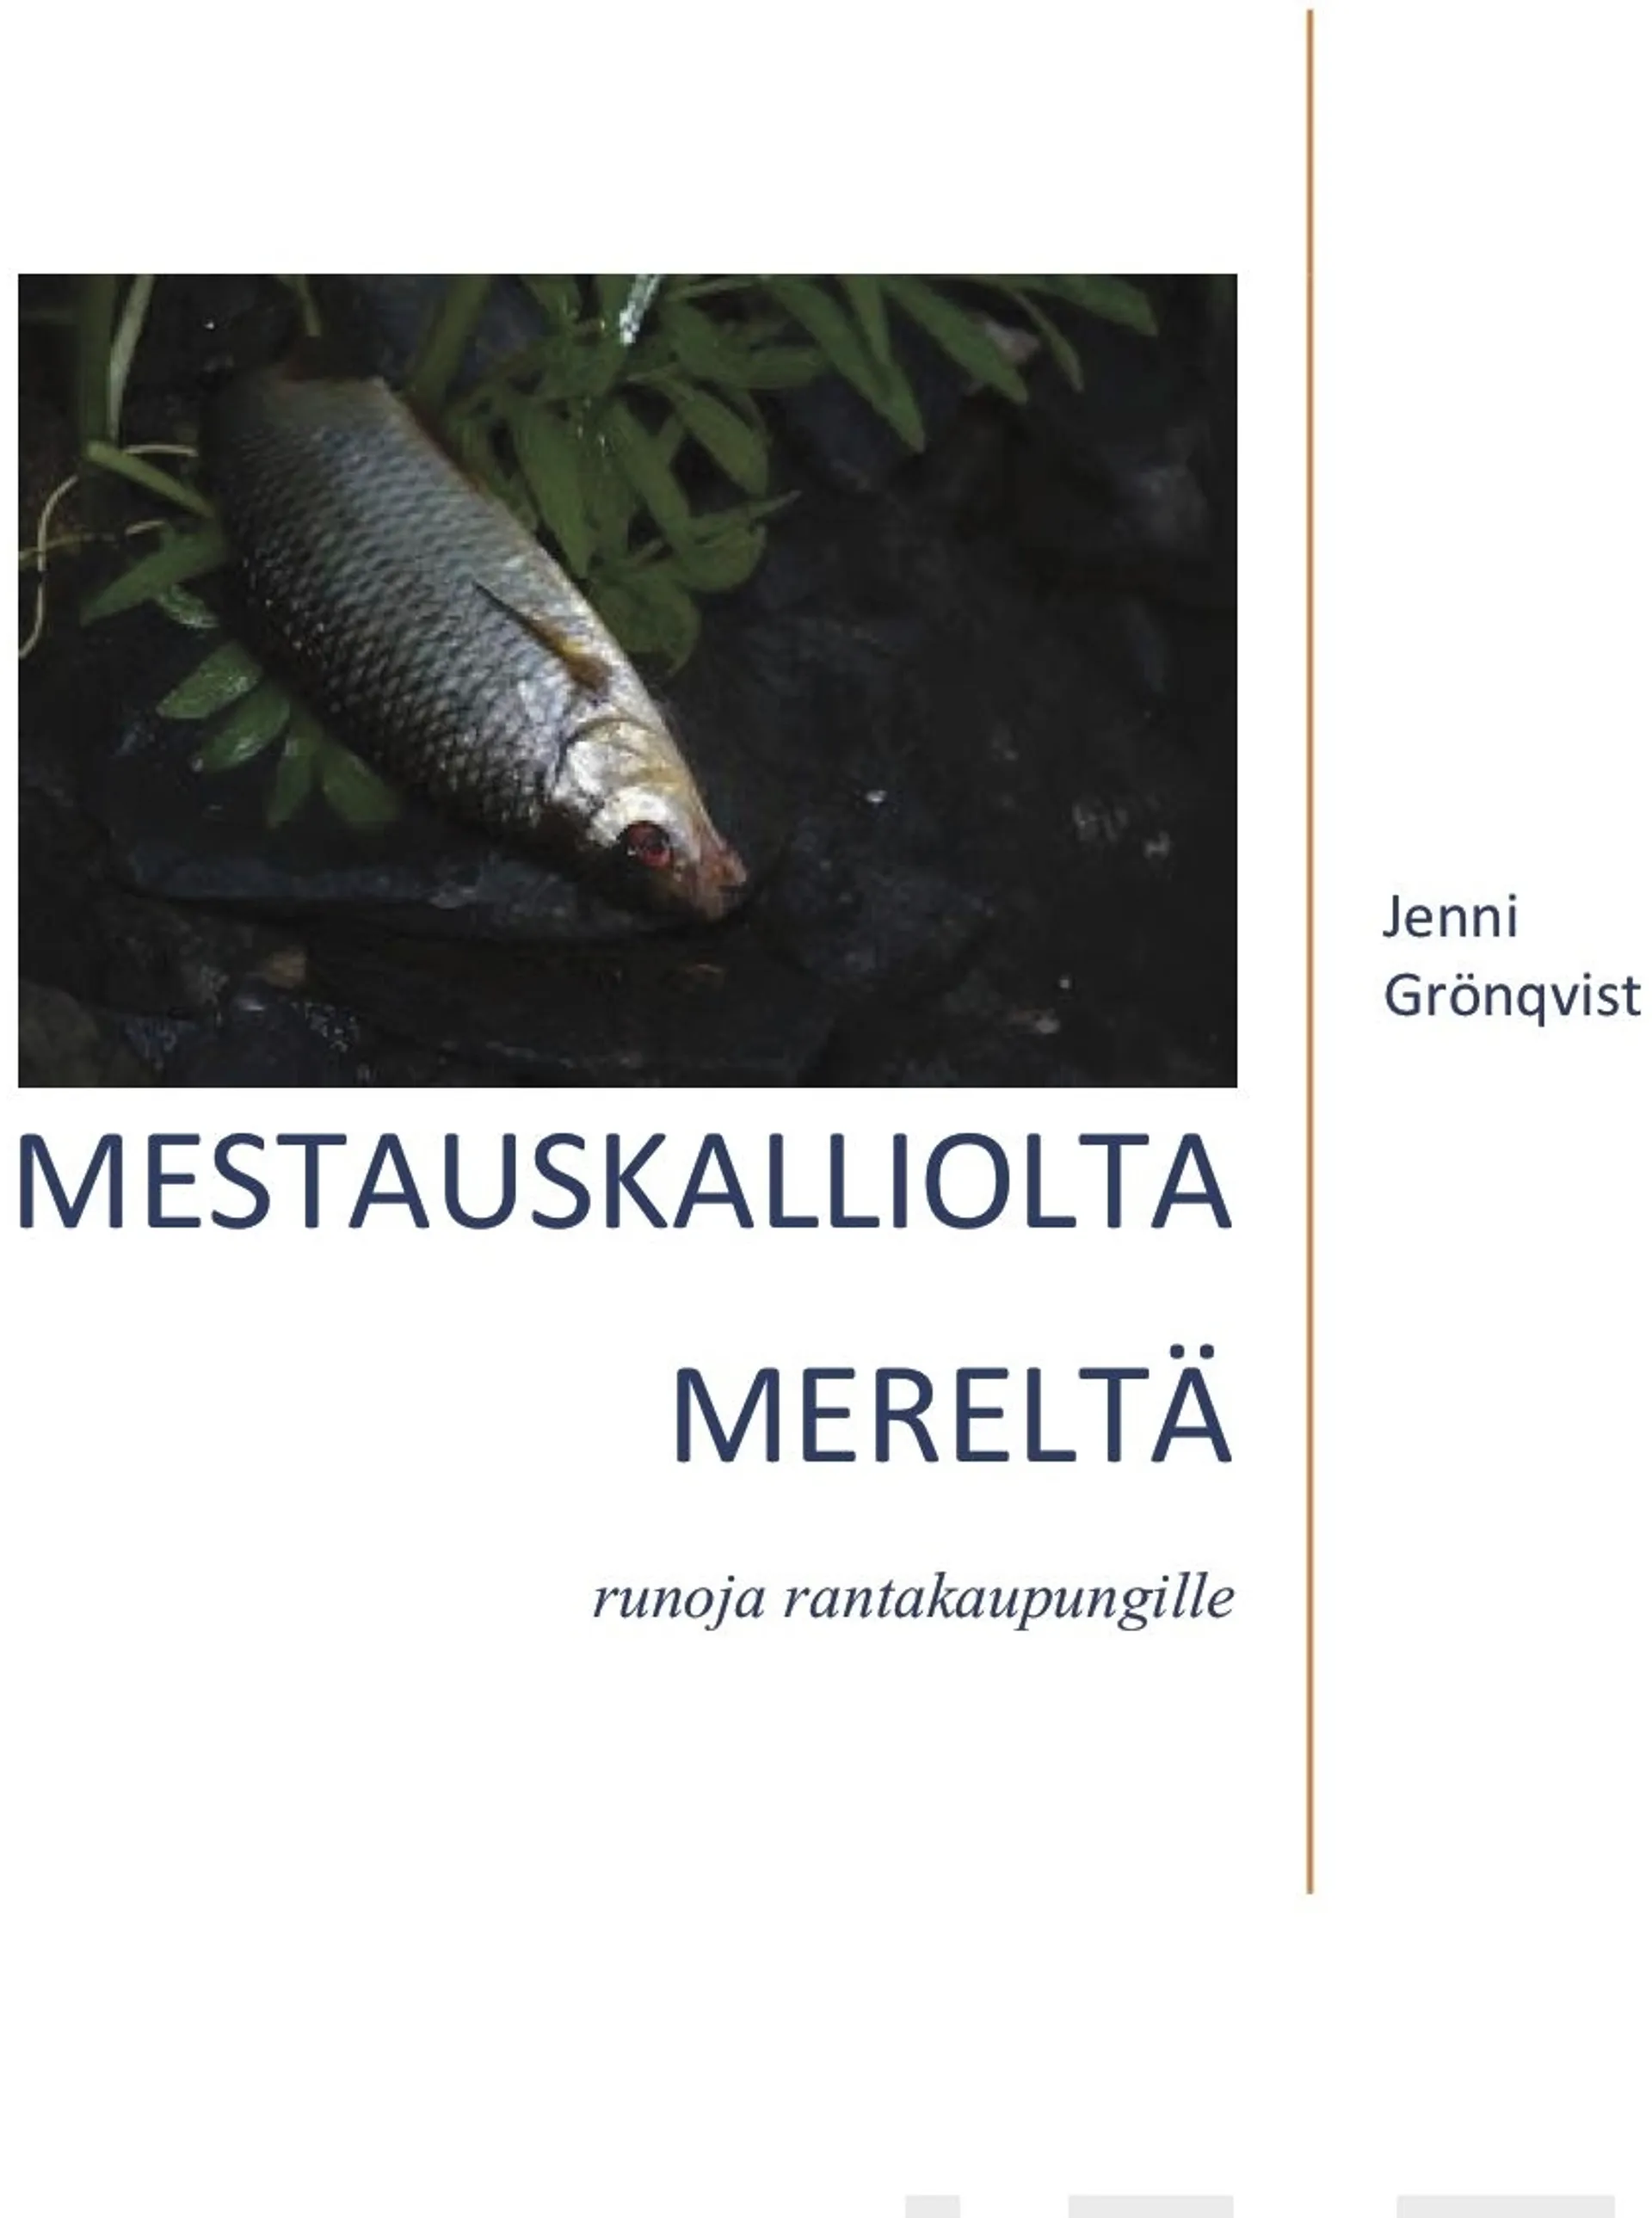 Grönqvist, Mestauskalliolta mereltä - Runoja rantakaupungille